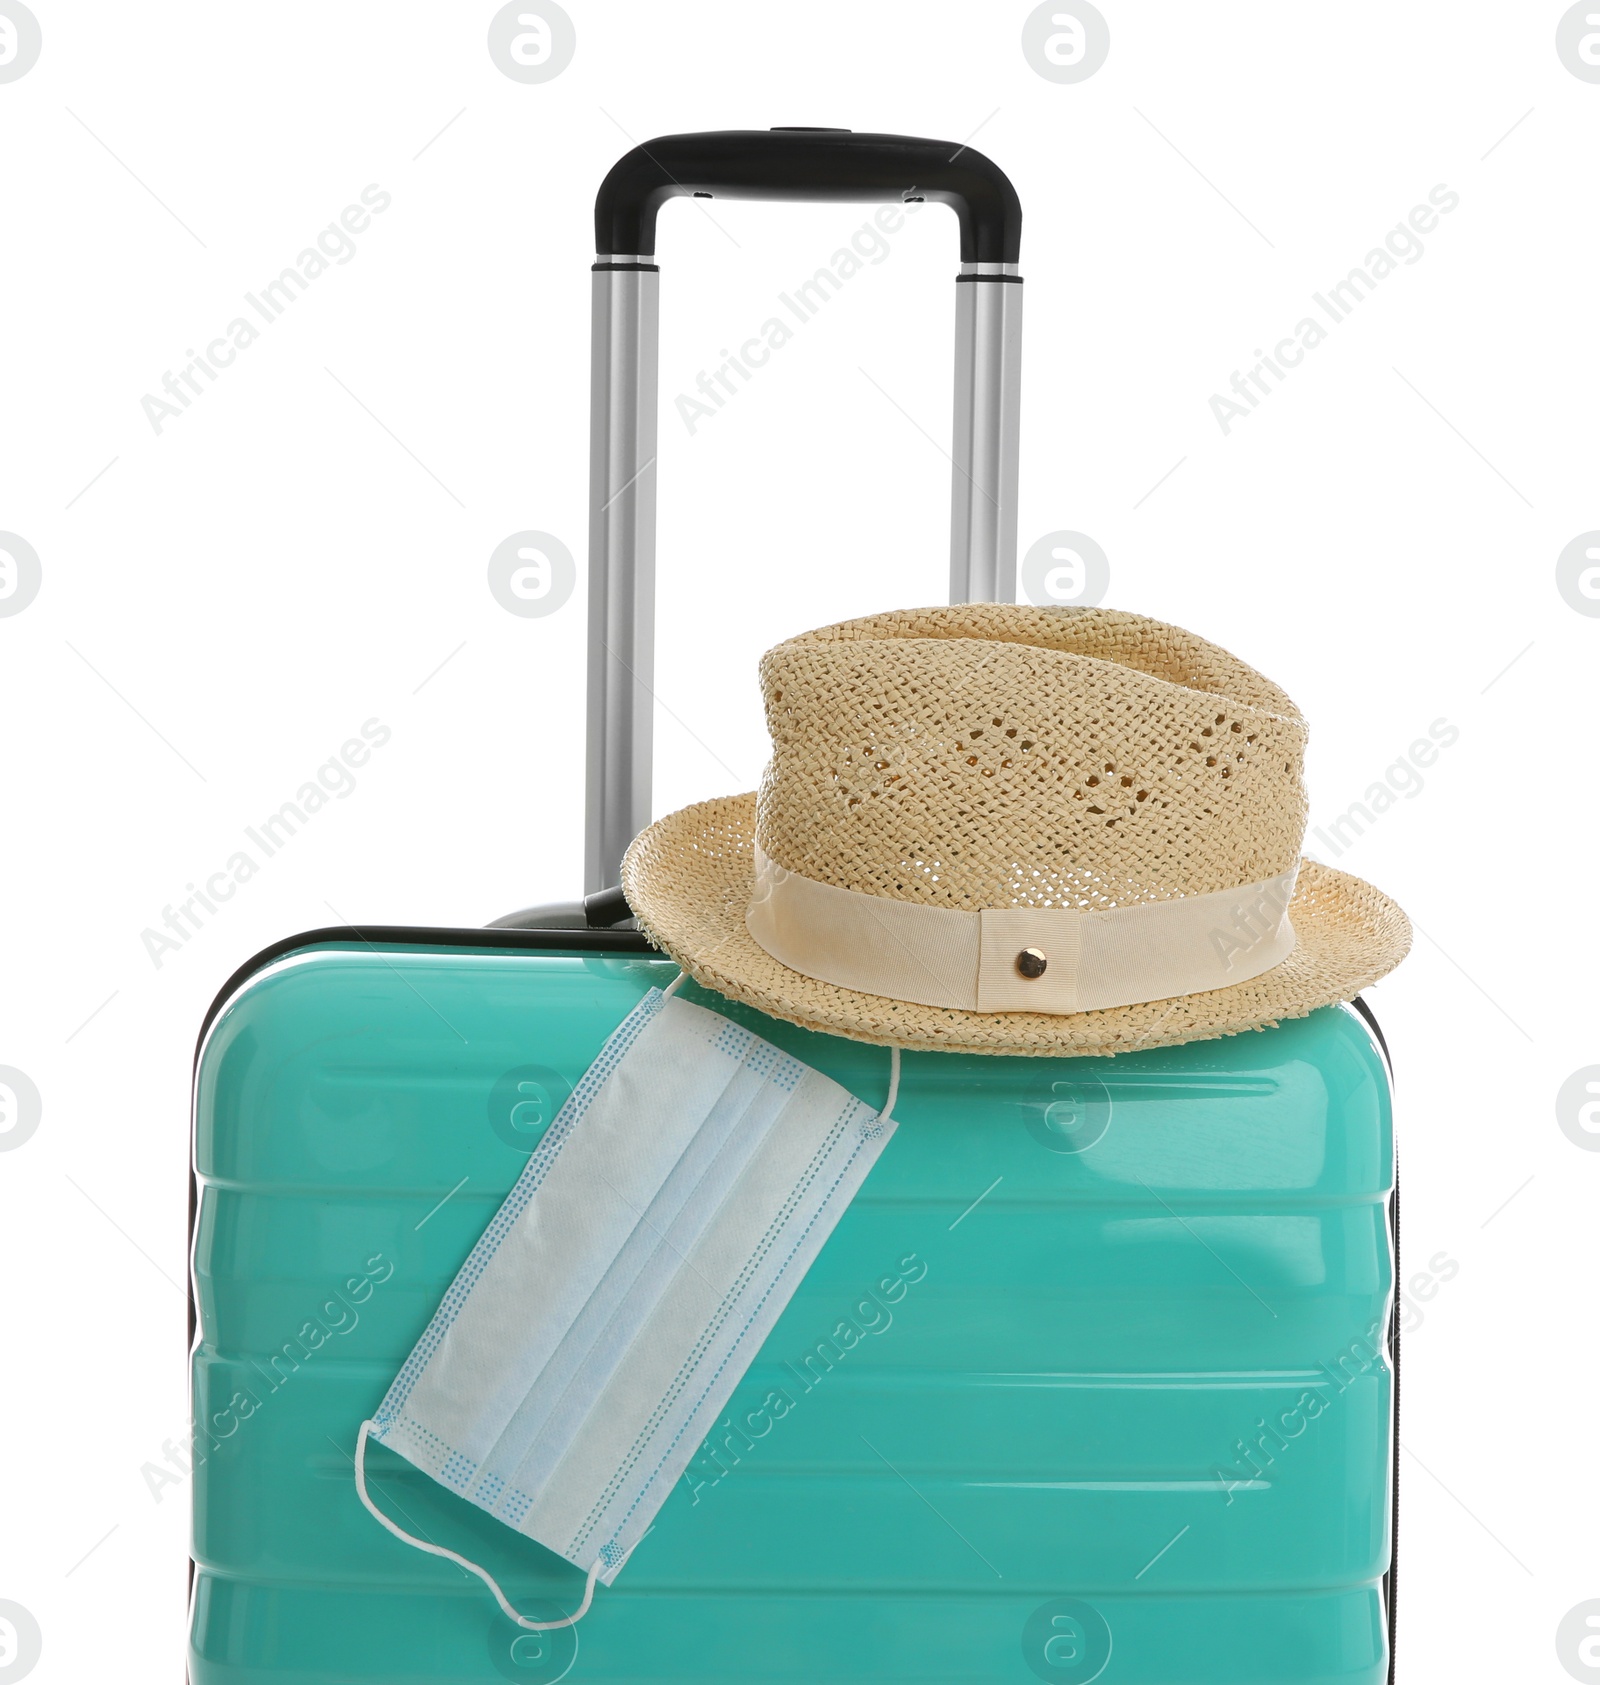 Photo of Stylish turquoise suitcase, hat and protective mask on white background. Travelling during coronavirus pandemic